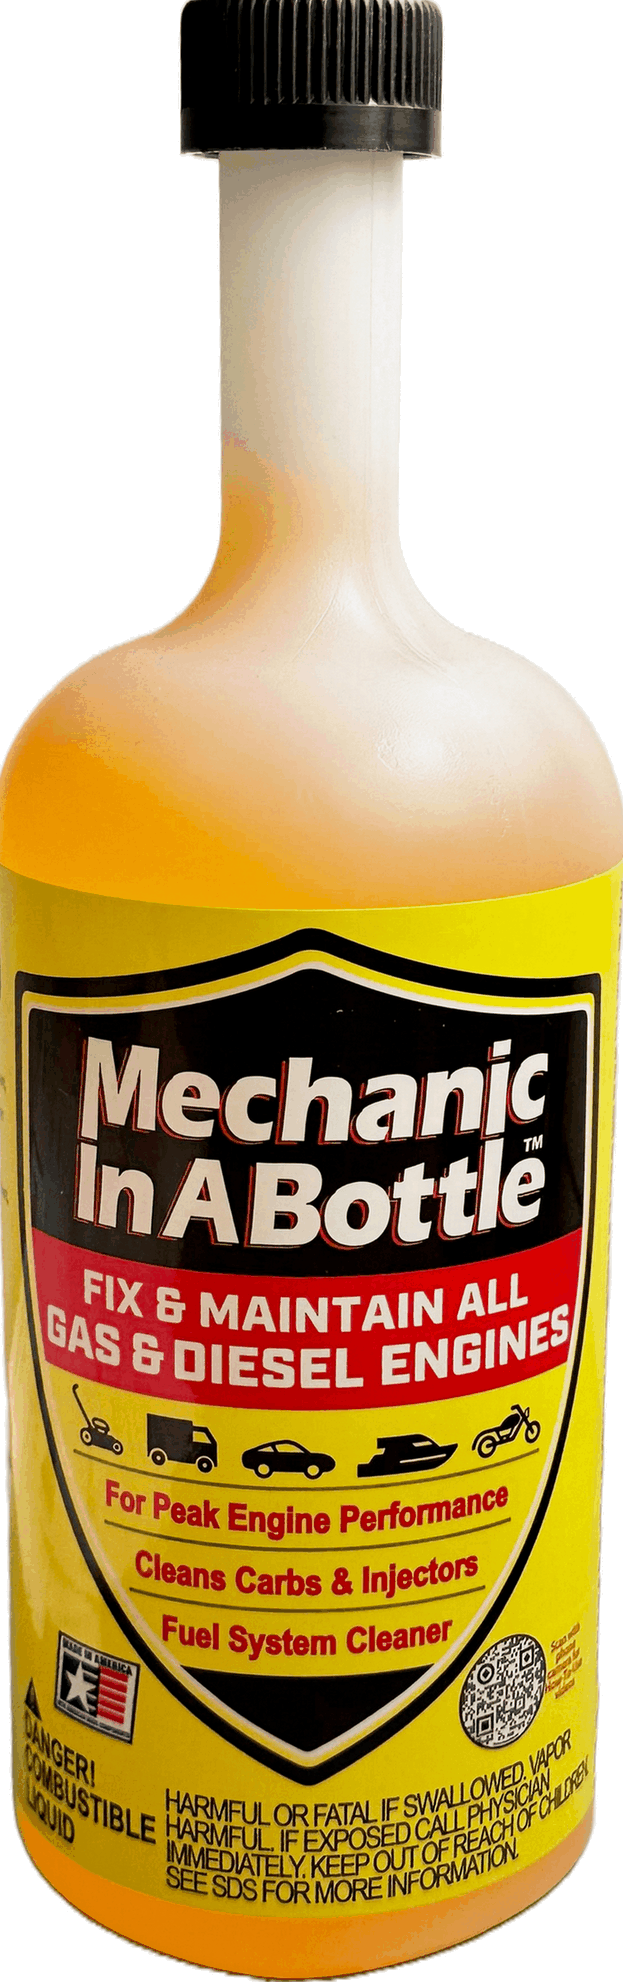 Mechanic in a Bottle